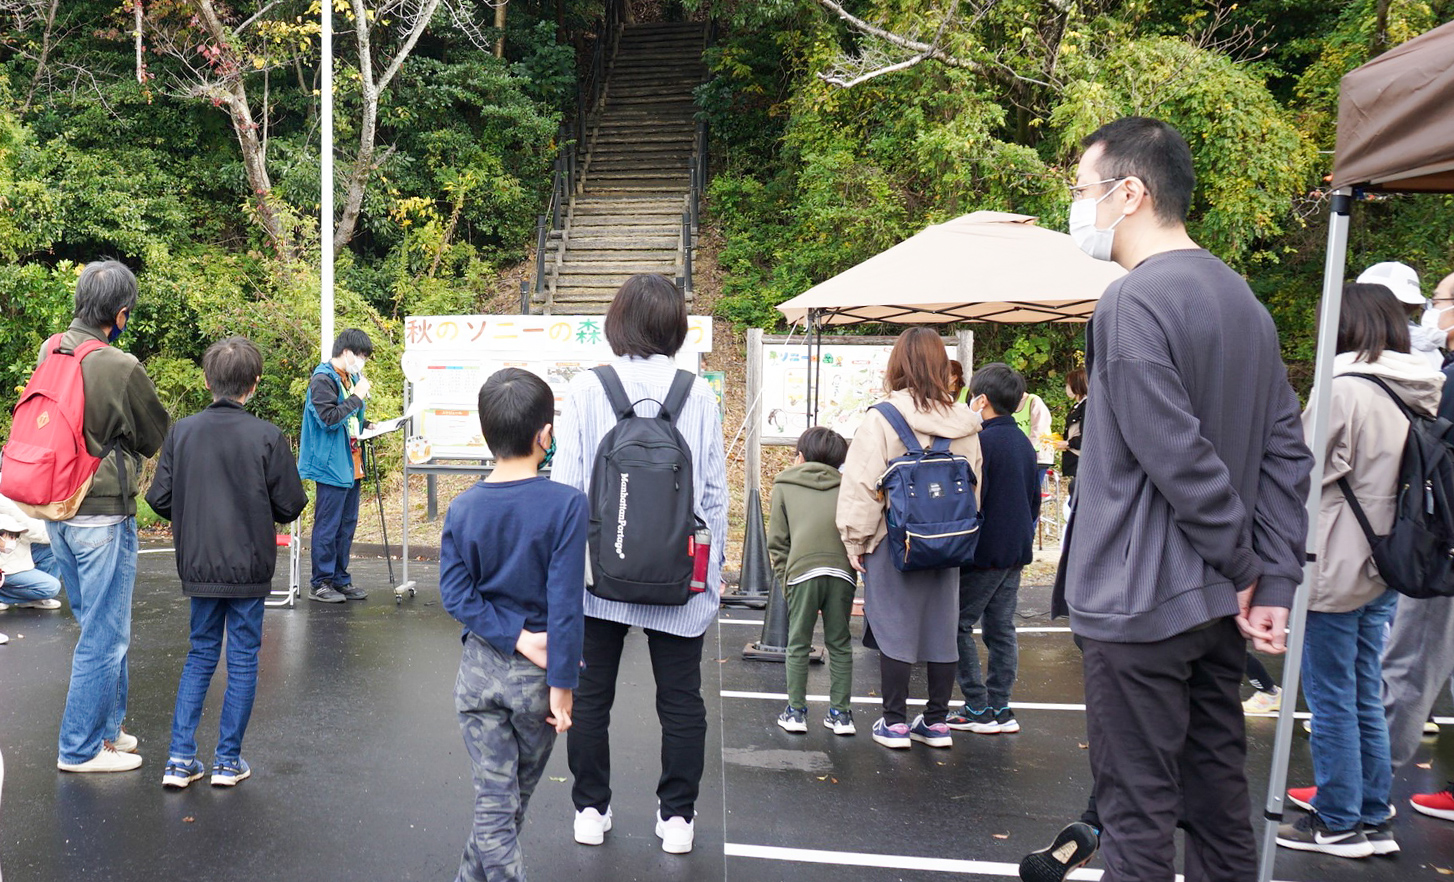 丘の公園の入り口に集まるたくさんの親子連れ。公園の入口は豊かな緑に囲まれ、木の階段が見える